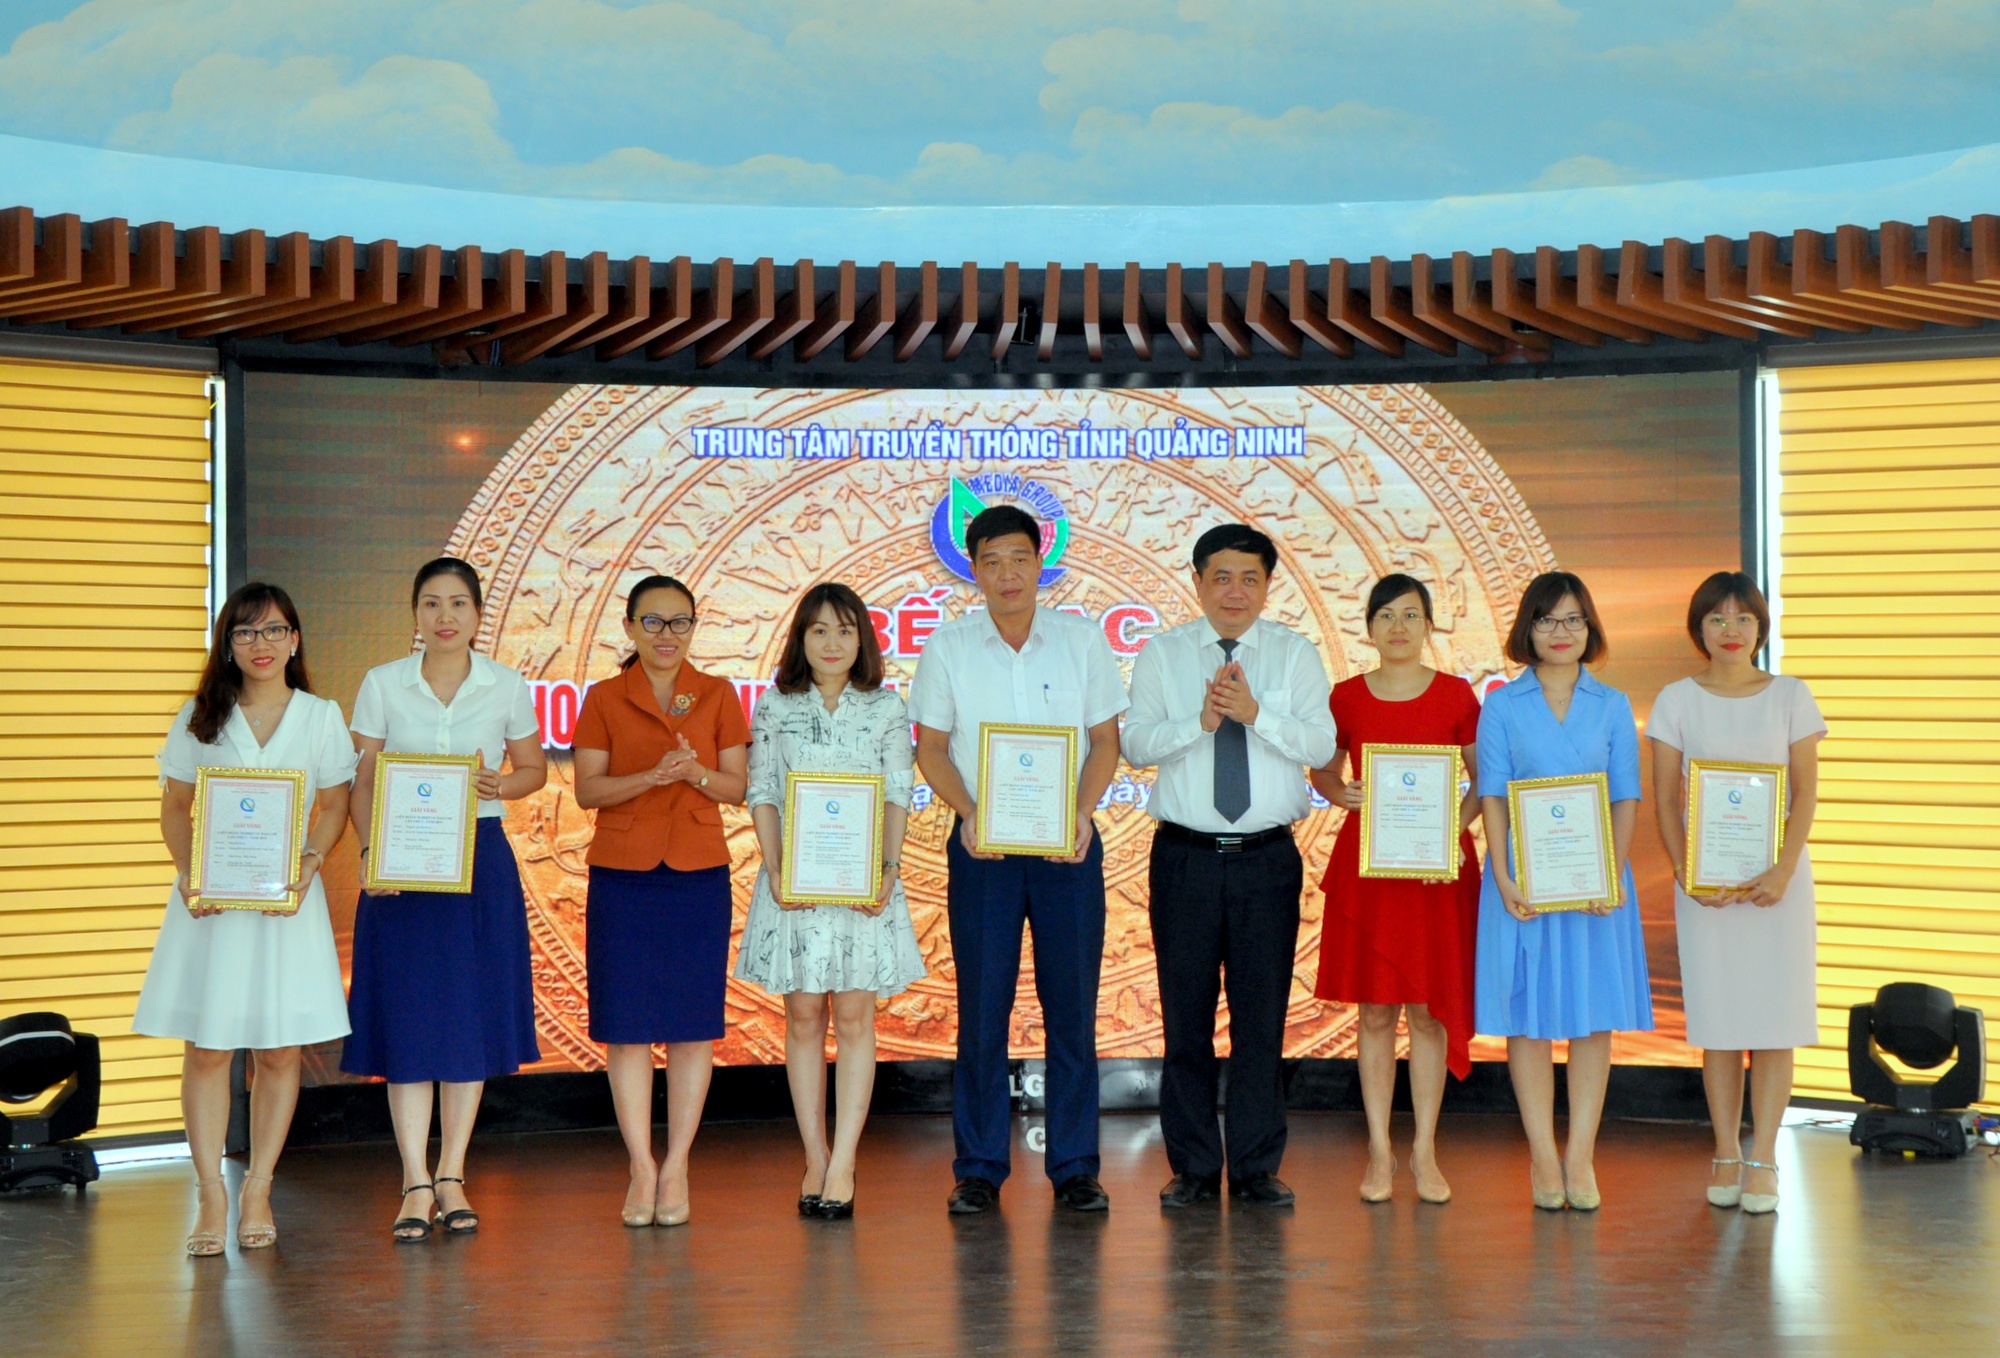 Đồng chí Mai Vũ Tuấn trao giải cho các tác giả đạt giải vàng Liên hoan nghiệp vụ báo chí Trung tâm Truyền thông tỉnh Quảng Ninh lần I năm 2019